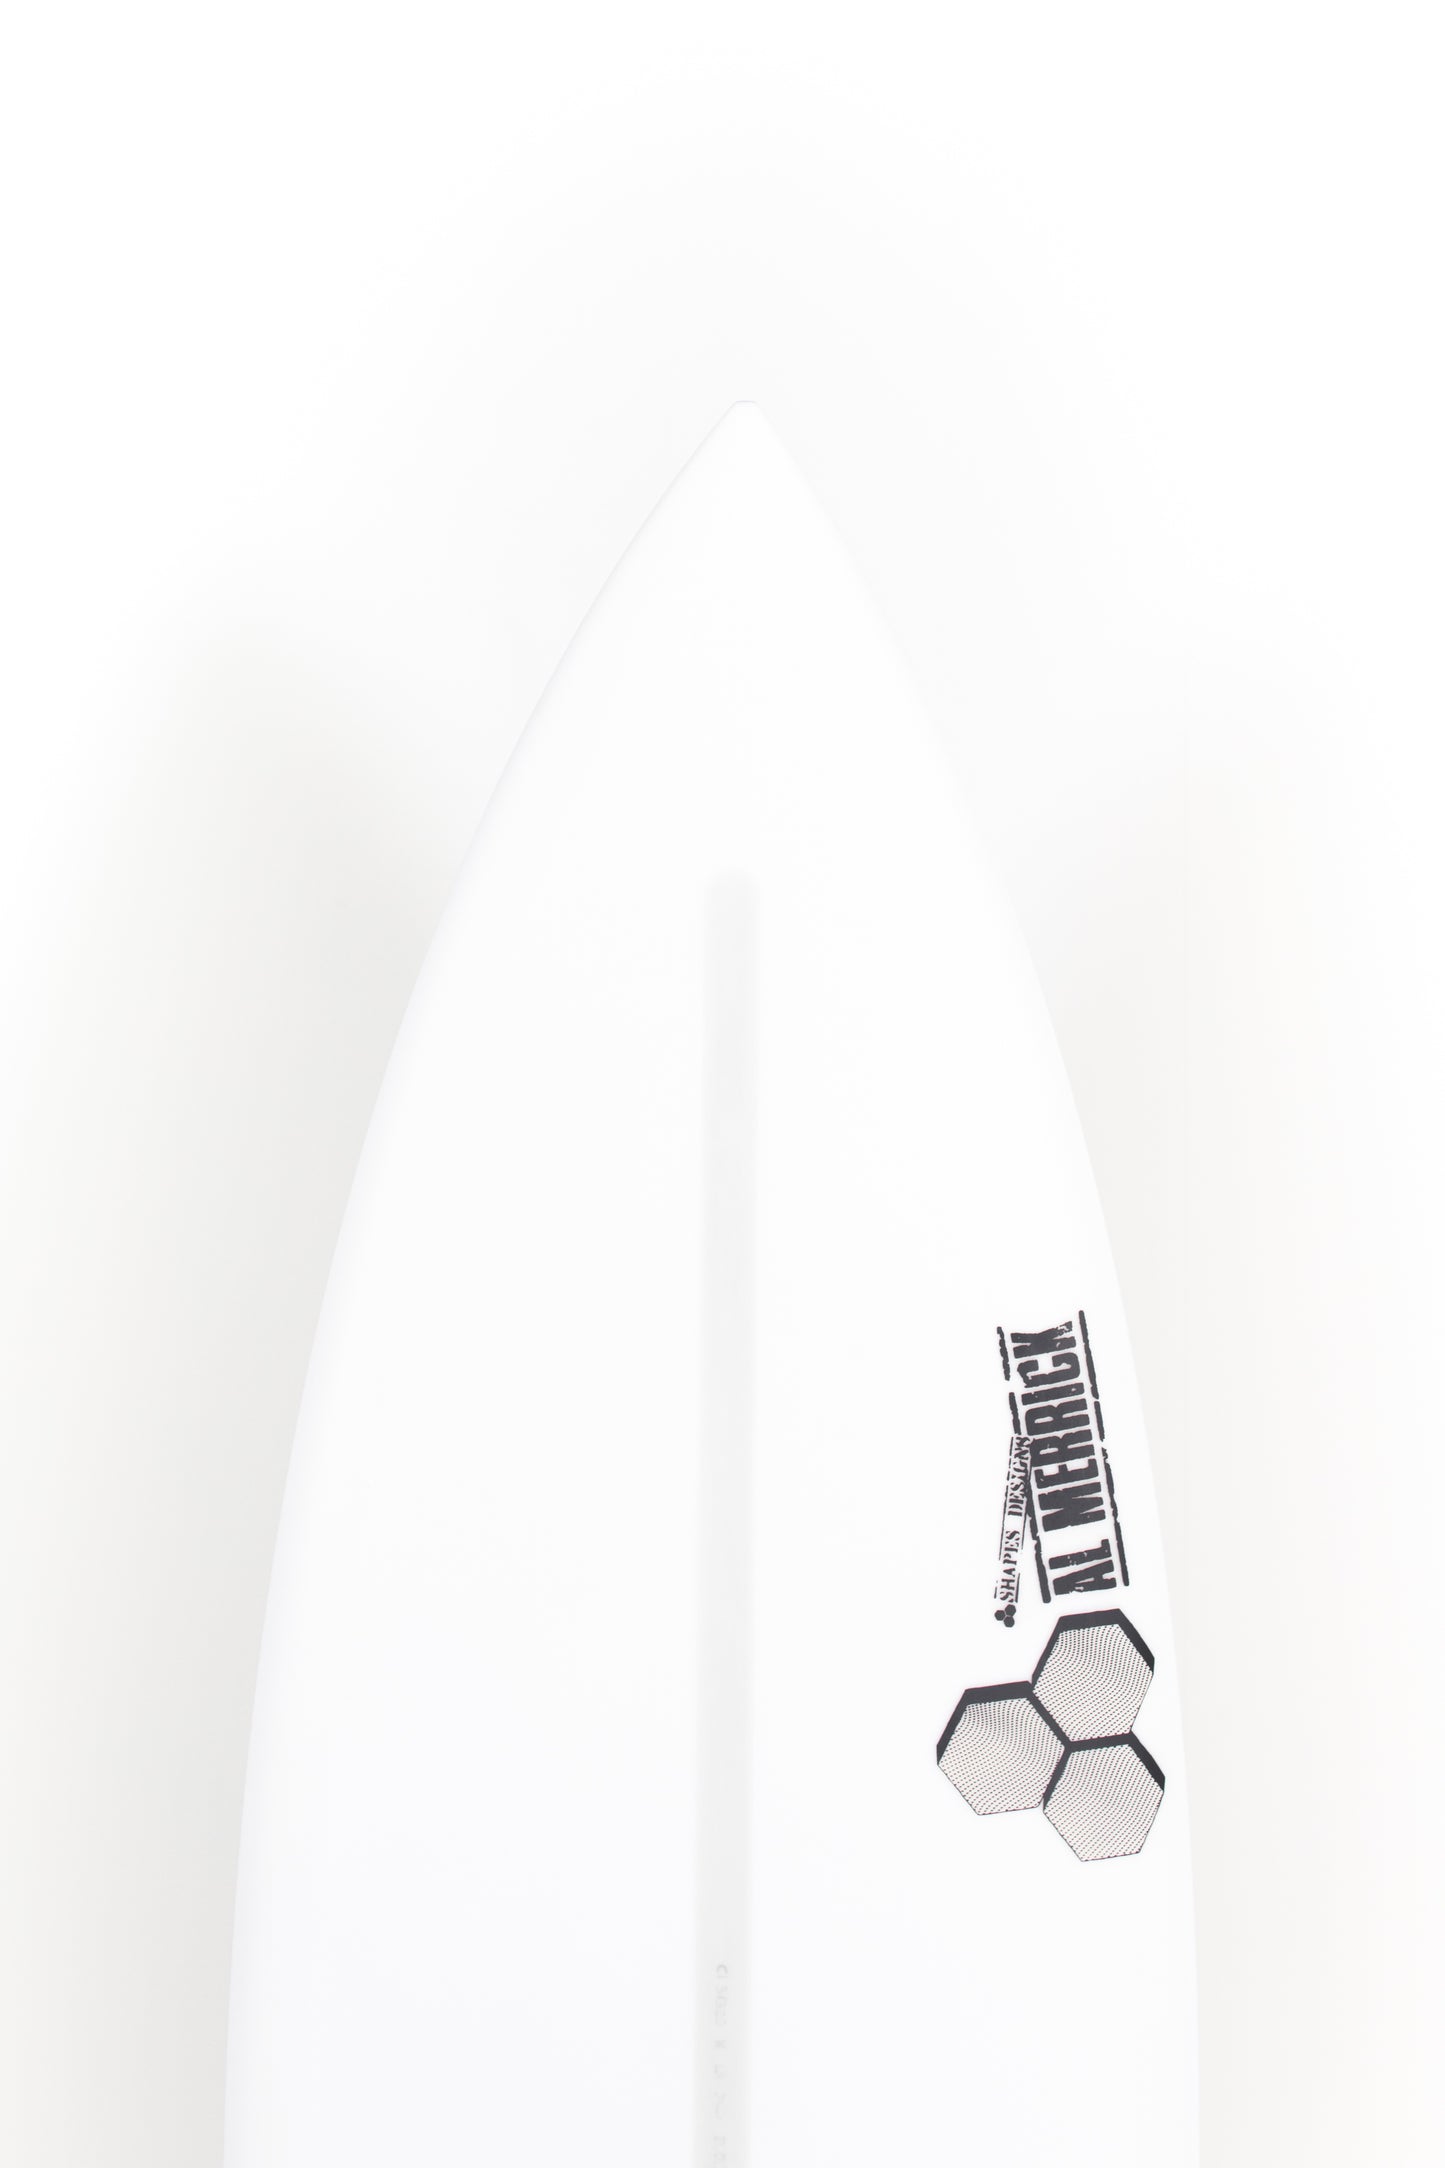 
                  
                    Pukas-Surf-Shop-Channel-Island-Surfboards-Dumpster-Diver-2-Al-Merrick-6_1_-CI31320
                  
                